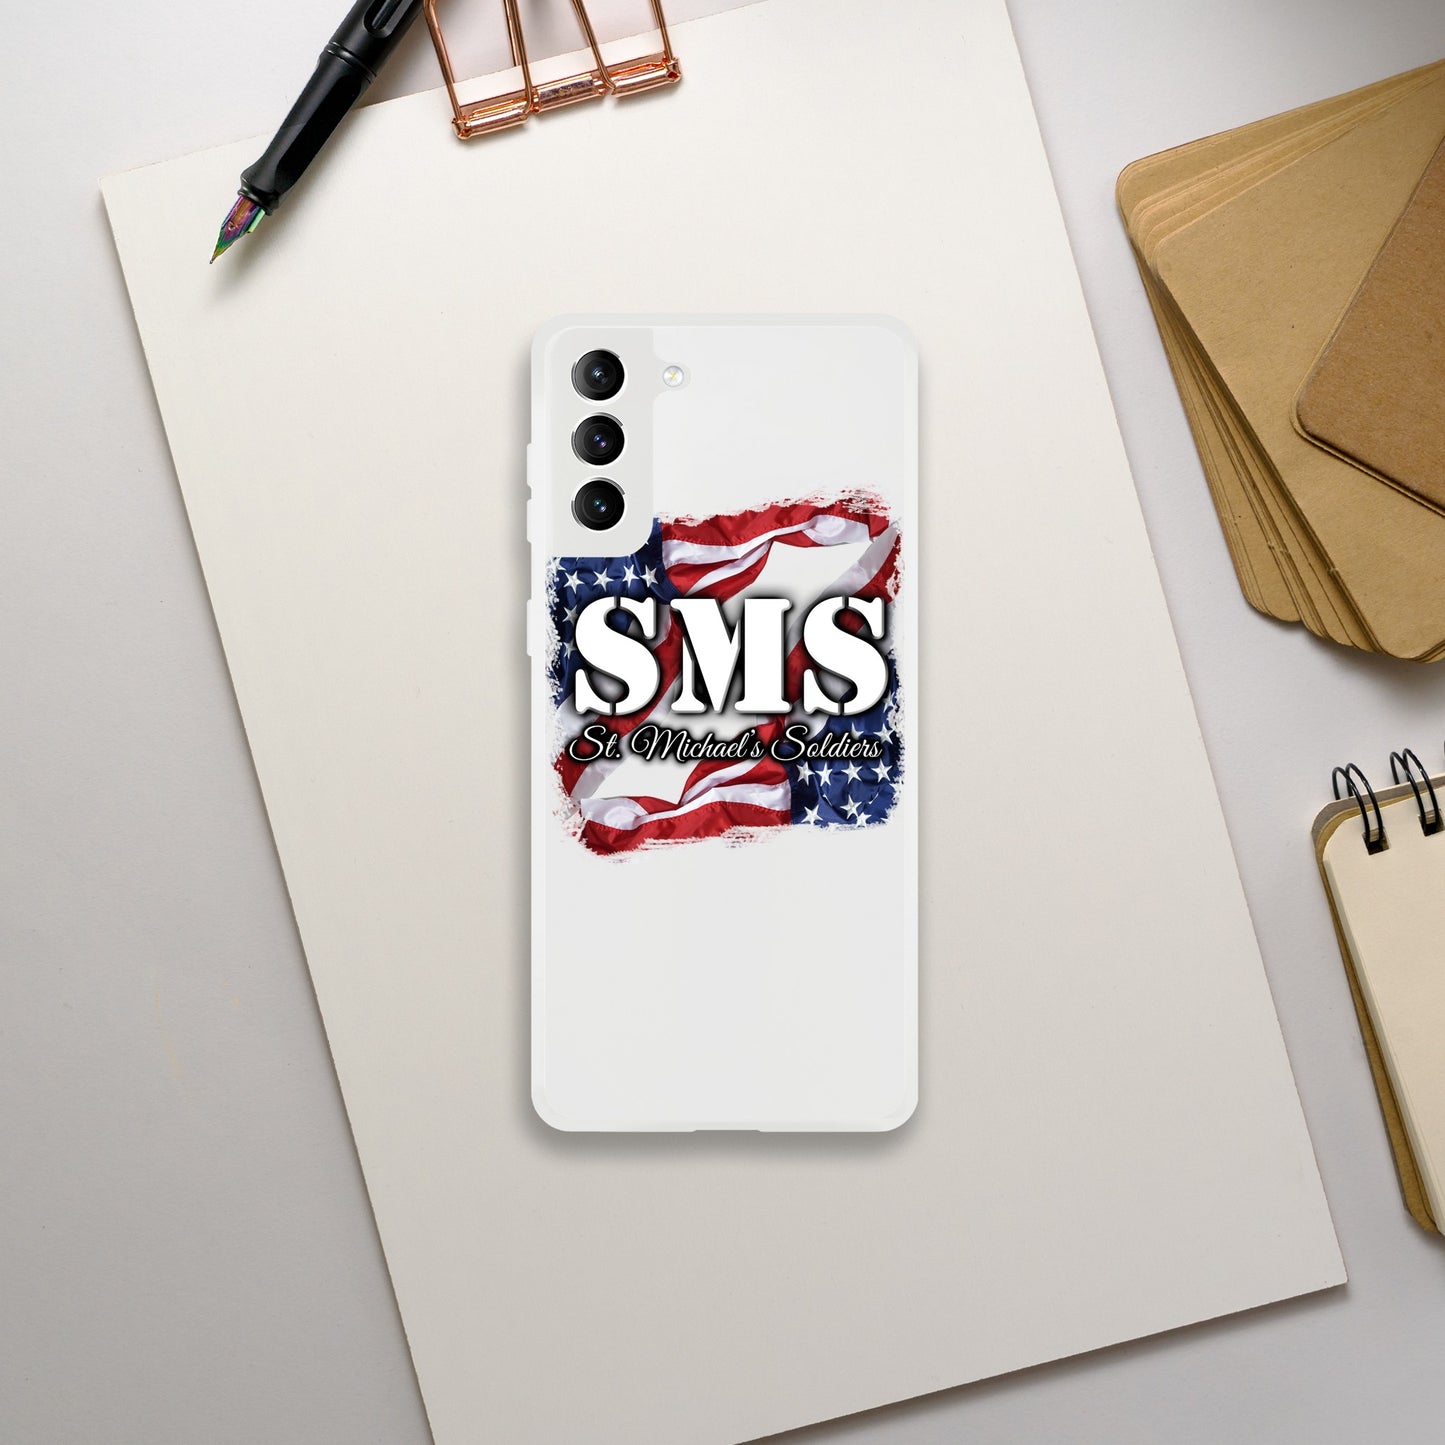 SMS (Flag1) - iPhone Tough case - Flexi case